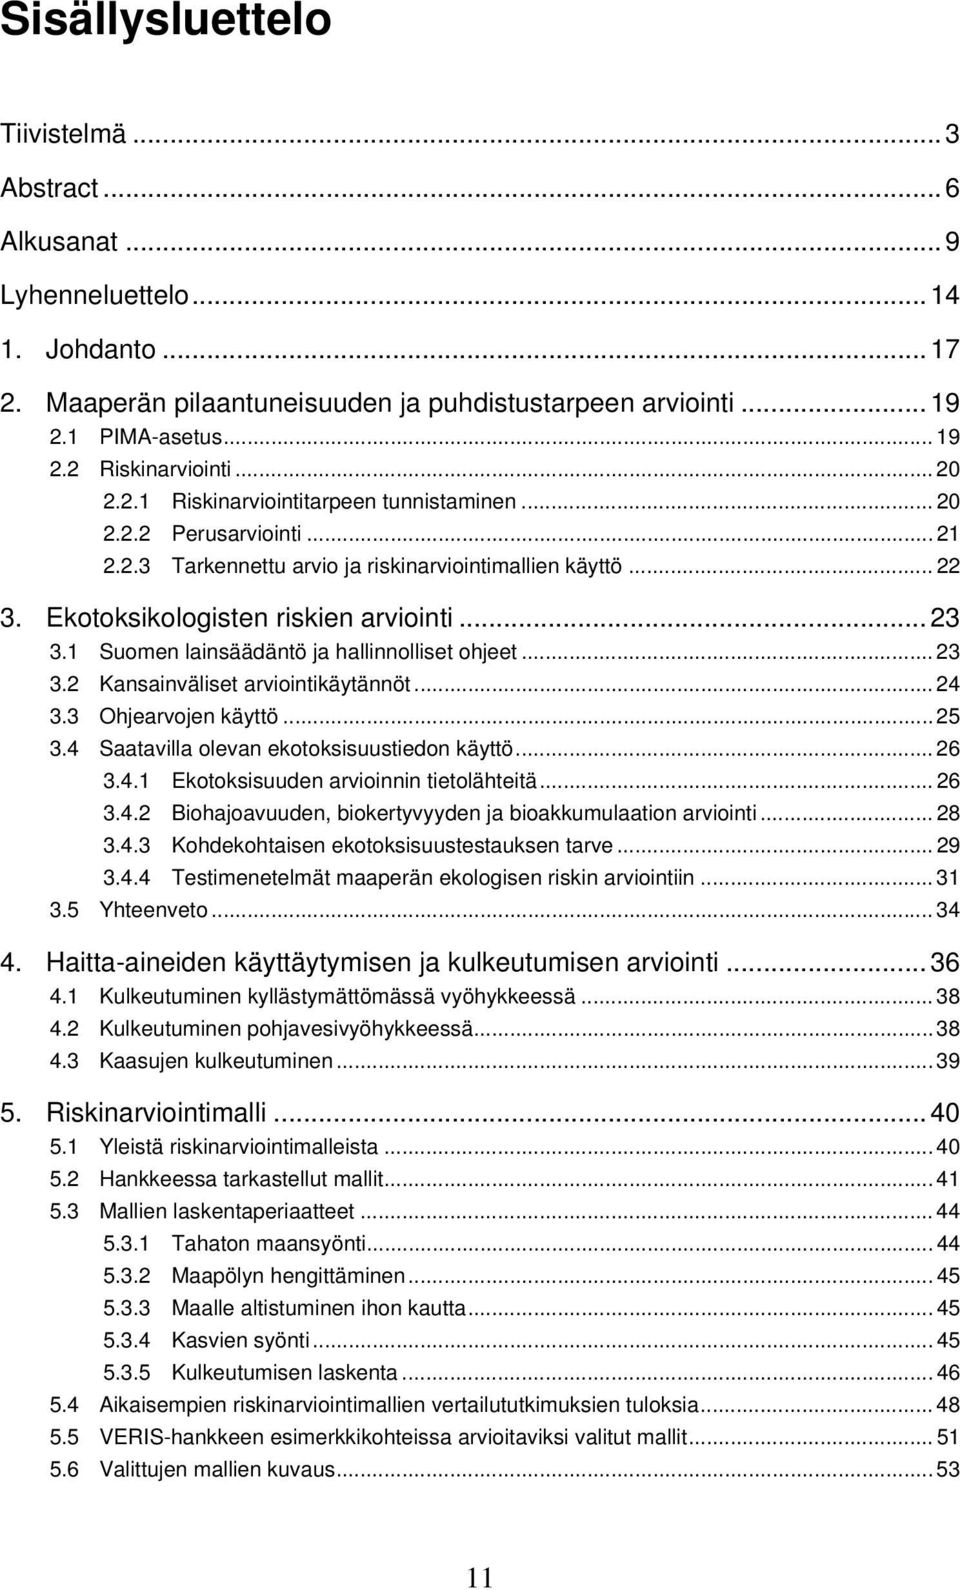 1 Suomen lainsäädäntö ja hallinnolliset ohjeet... 23 3.2 Kansainväliset arviointikäytännöt... 24 3.3 Ohjearvojen käyttö...25 3.4 Saatavilla olevan ekotoksisuustiedon käyttö... 26 3.4.1 Ekotoksisuuden arvioinnin tietolähteitä.